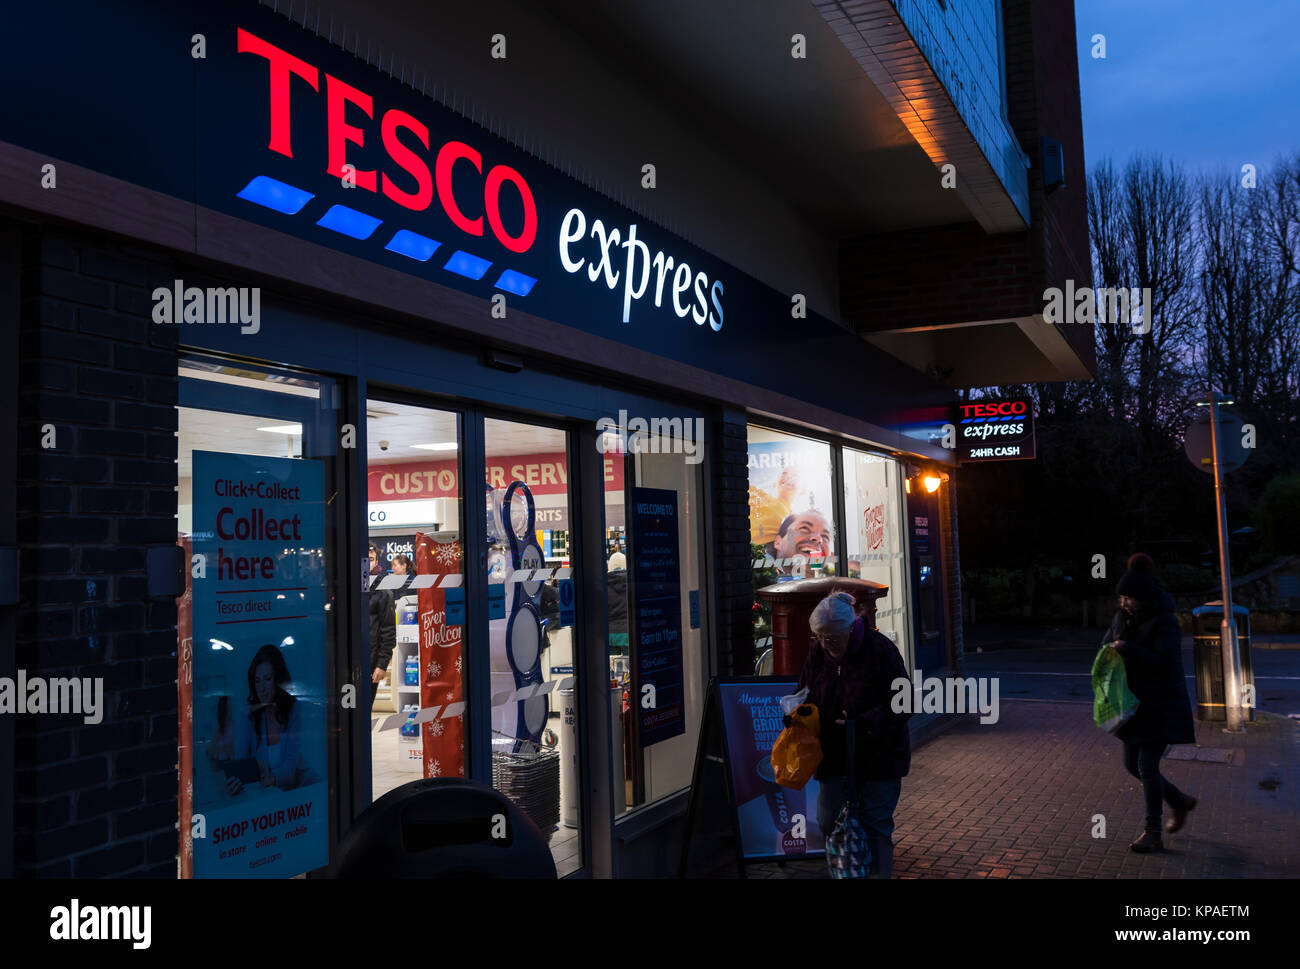 Tesco Express boutique, une épicerie britannique, ouvert le soir en hiver en Norfolk Arms, West Sussex, Angleterre, Royaume-Uni. Banque D'Images